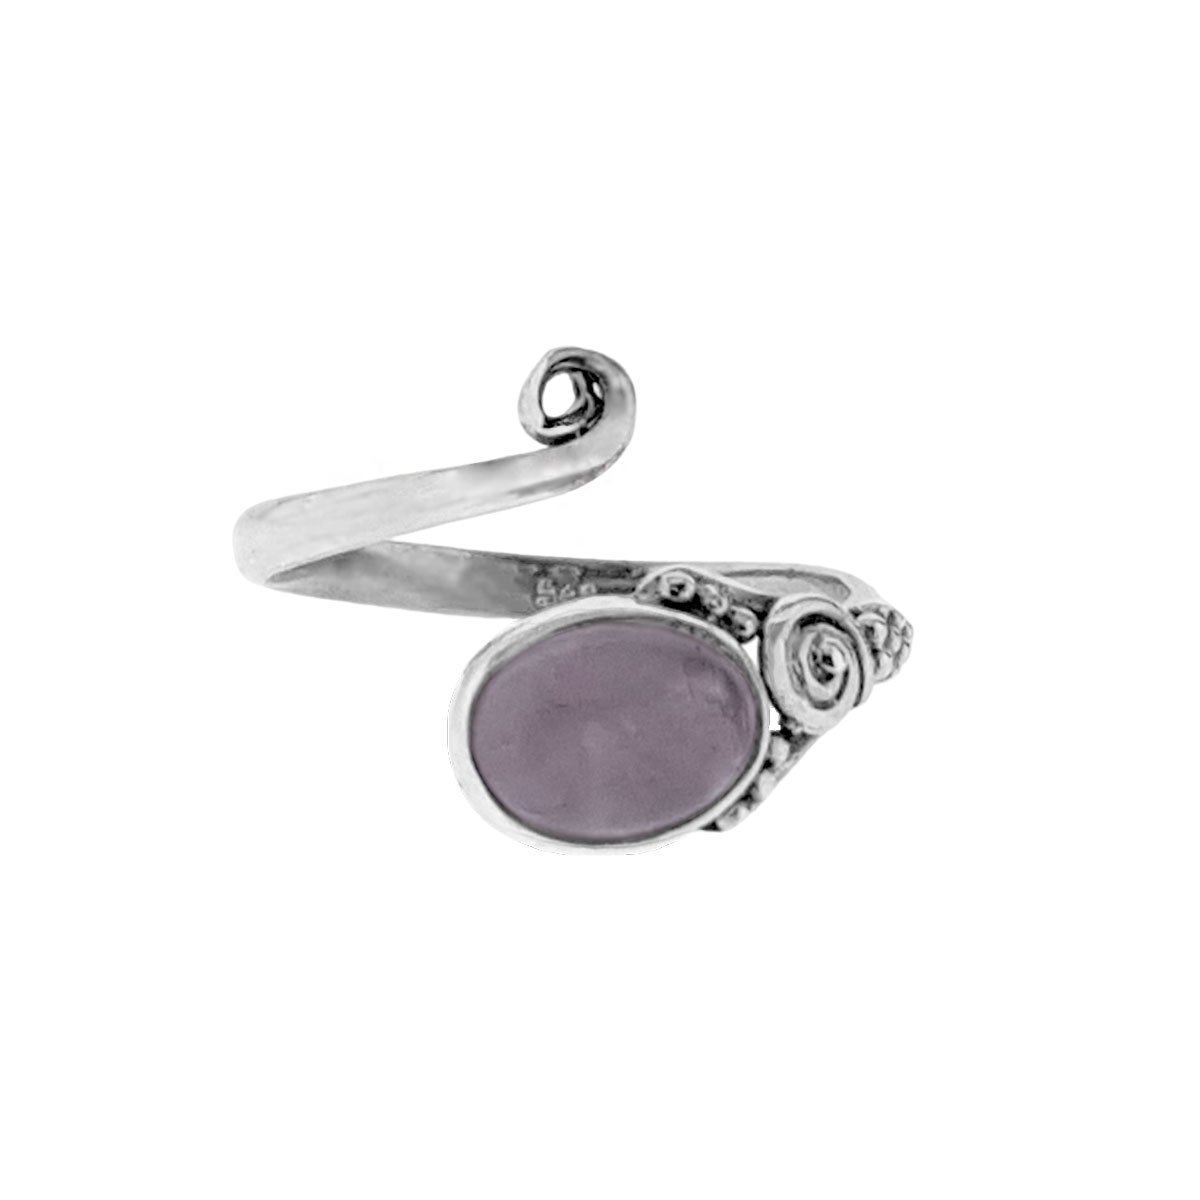 Jewelryz | Kayra | Ring 925 zilver met rozenkwarts edelsteen | Verstelbaar in maat |